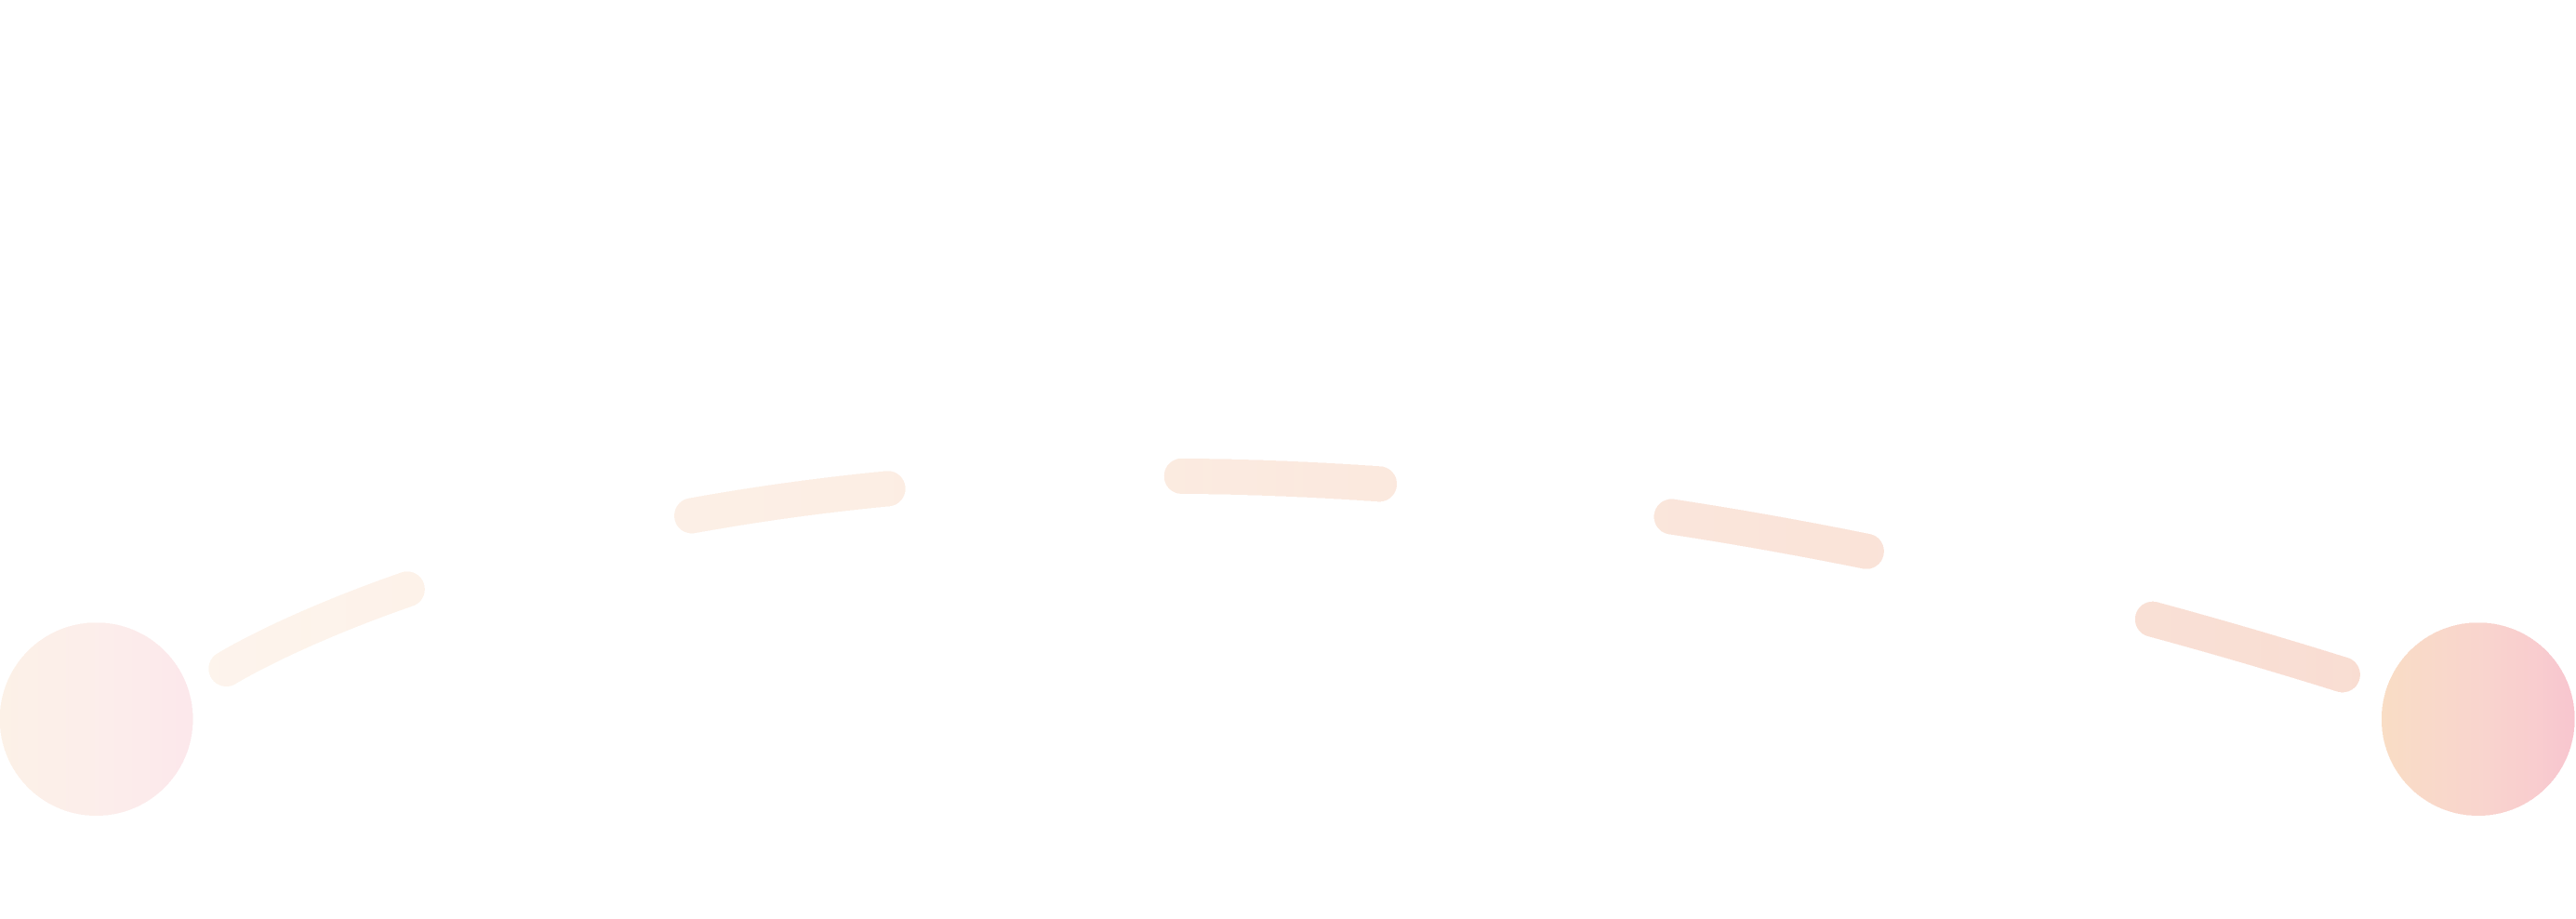 La ligne orange représente la deuxième étape du processus de candidature.